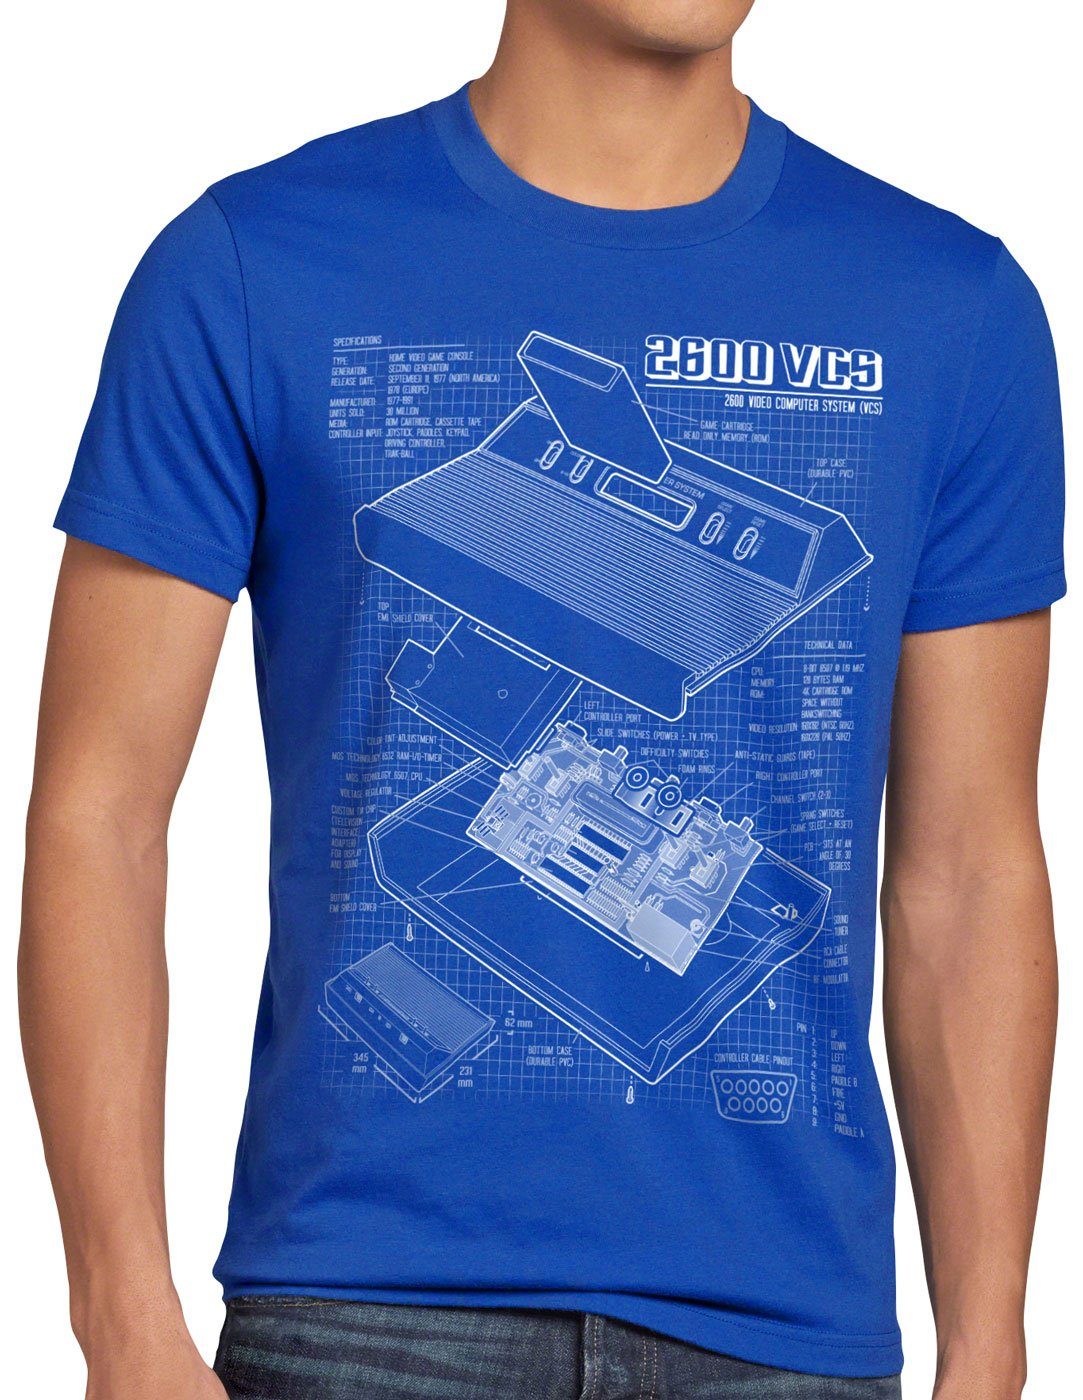 style3 Print-Shirt Herren T-Shirt VCS 2600 Heimcomputer Blaupause classic gamer